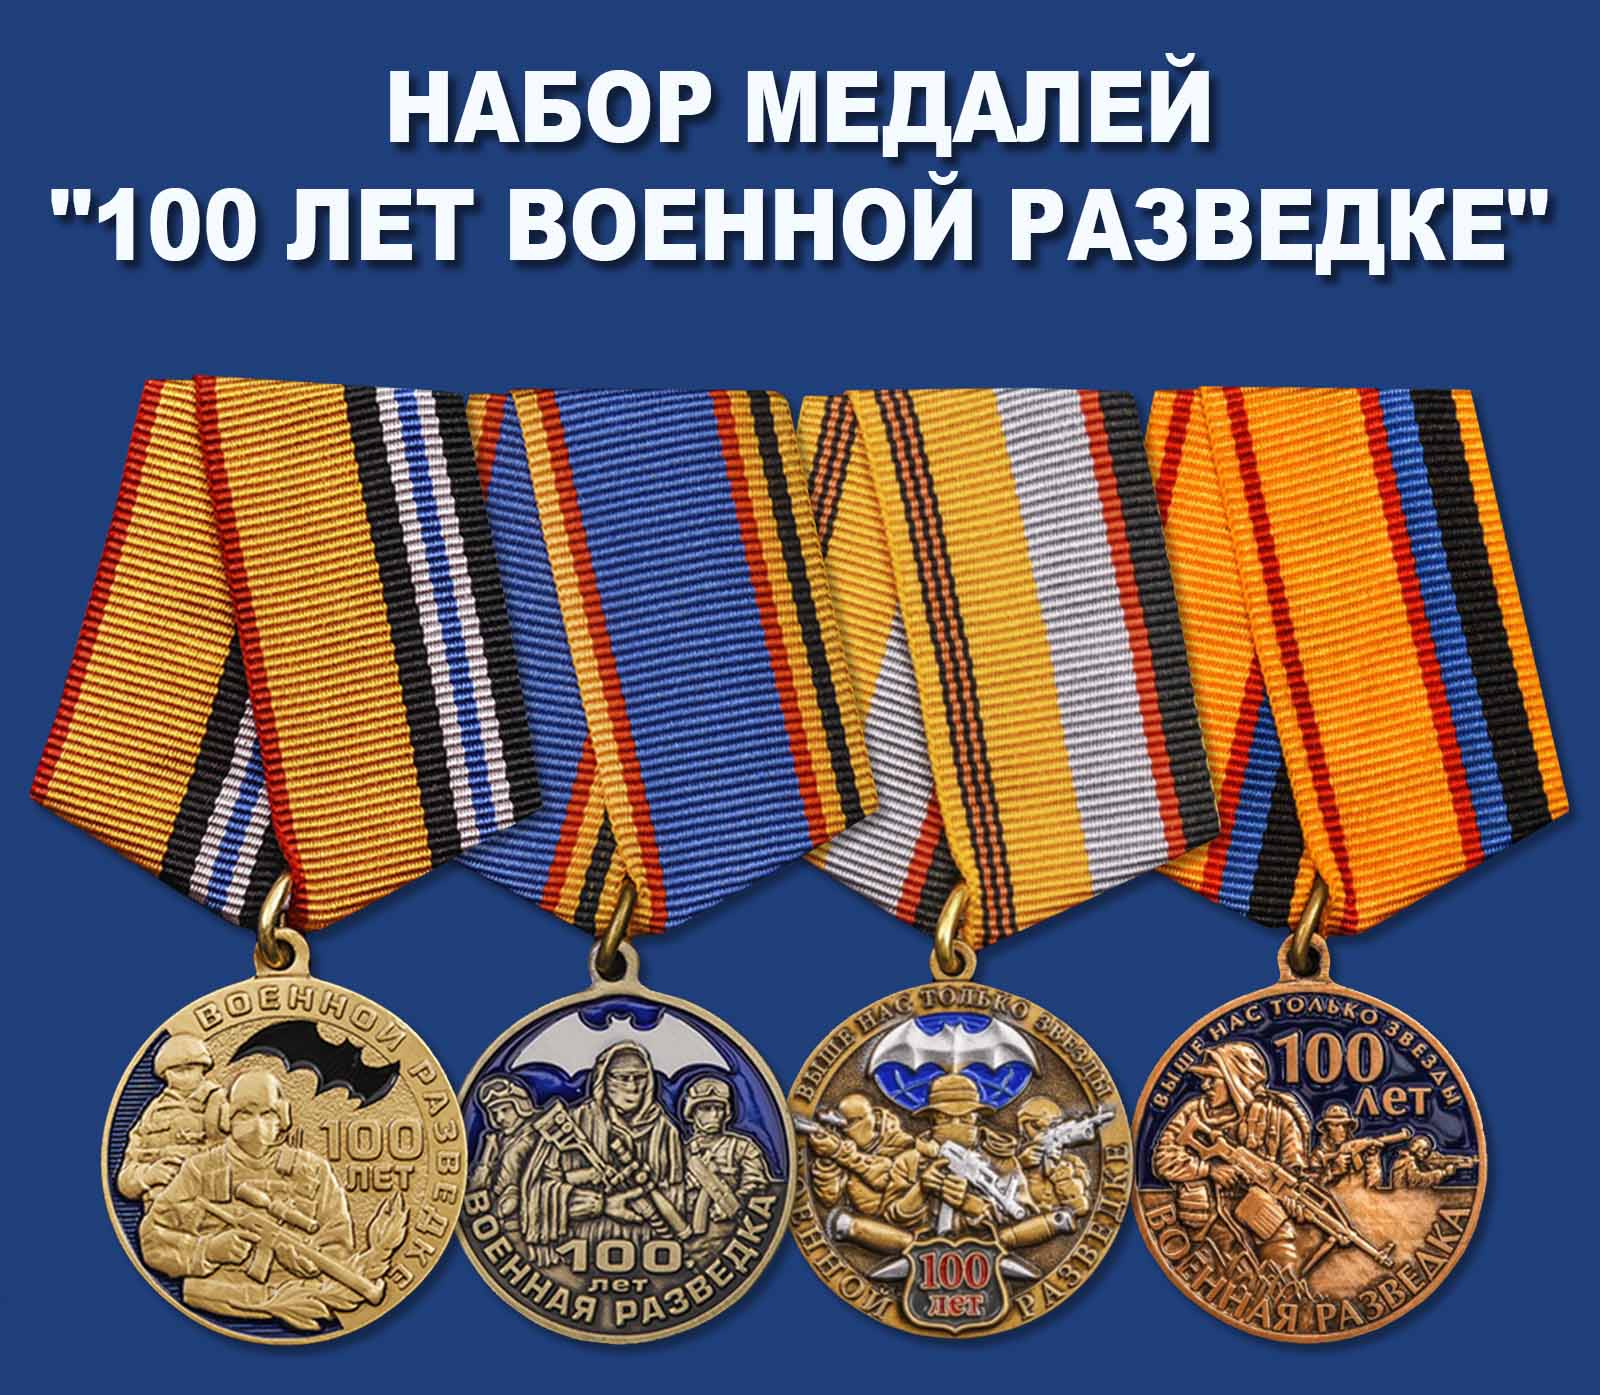 Купить набор медалей "100 лет Военной разведке"